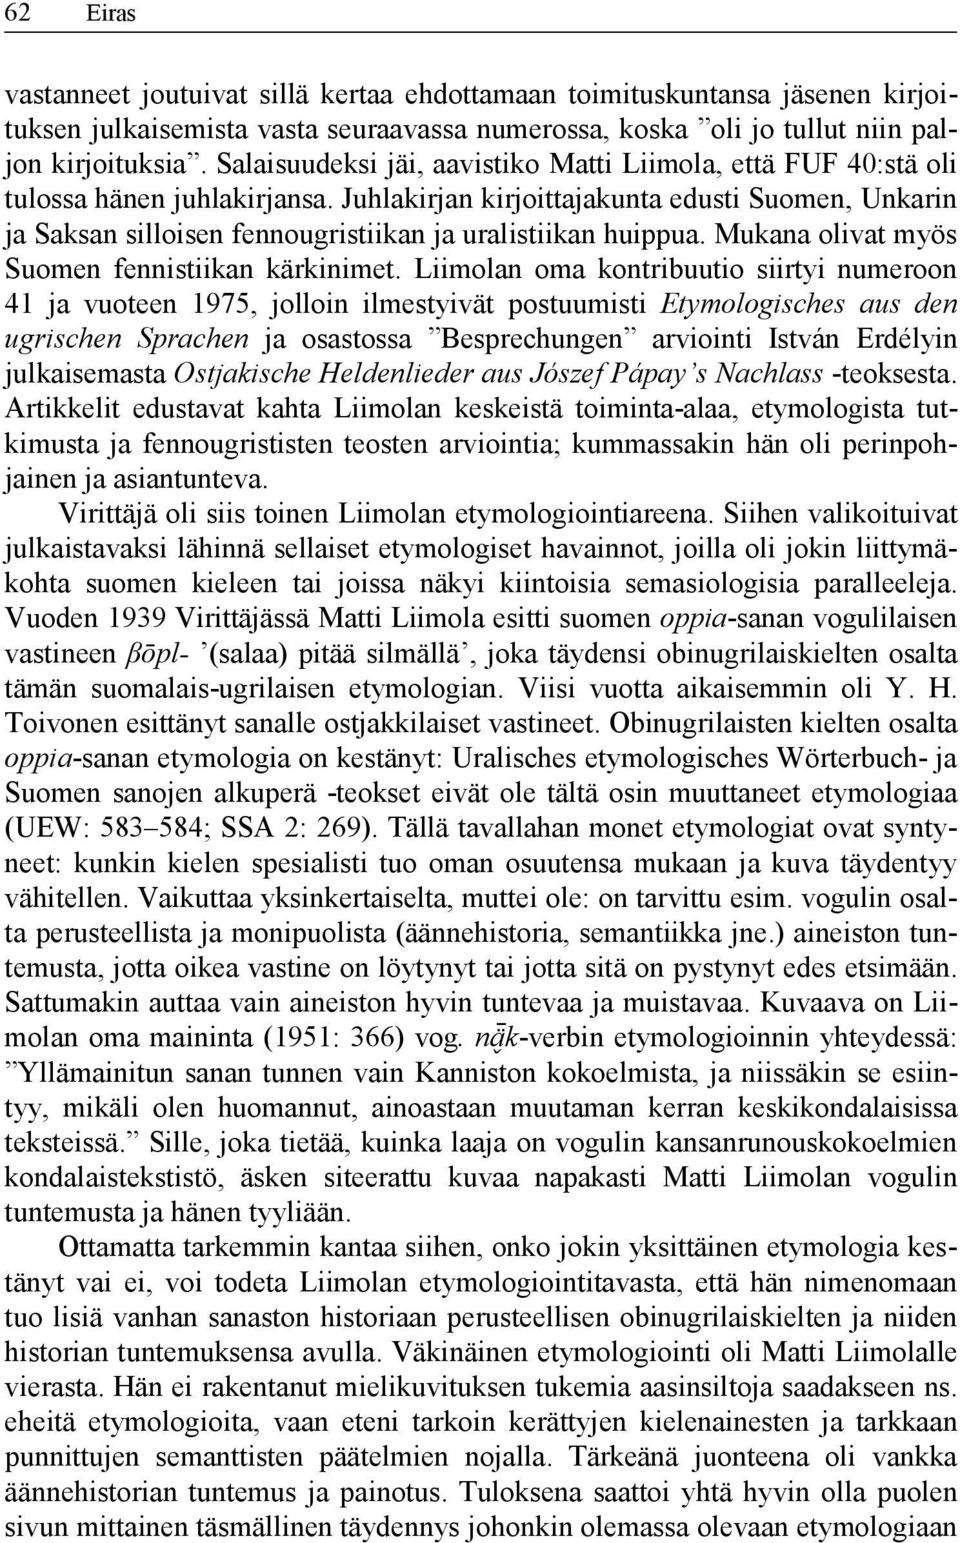 Juhlakirjan kirjoittajakunta edusti Suomen, Unkarin ja Saksan silloisen fennougristiikan ja uralistiikan huippua. Mukana olivat myös Suomen fennistiikan kärkinimet.